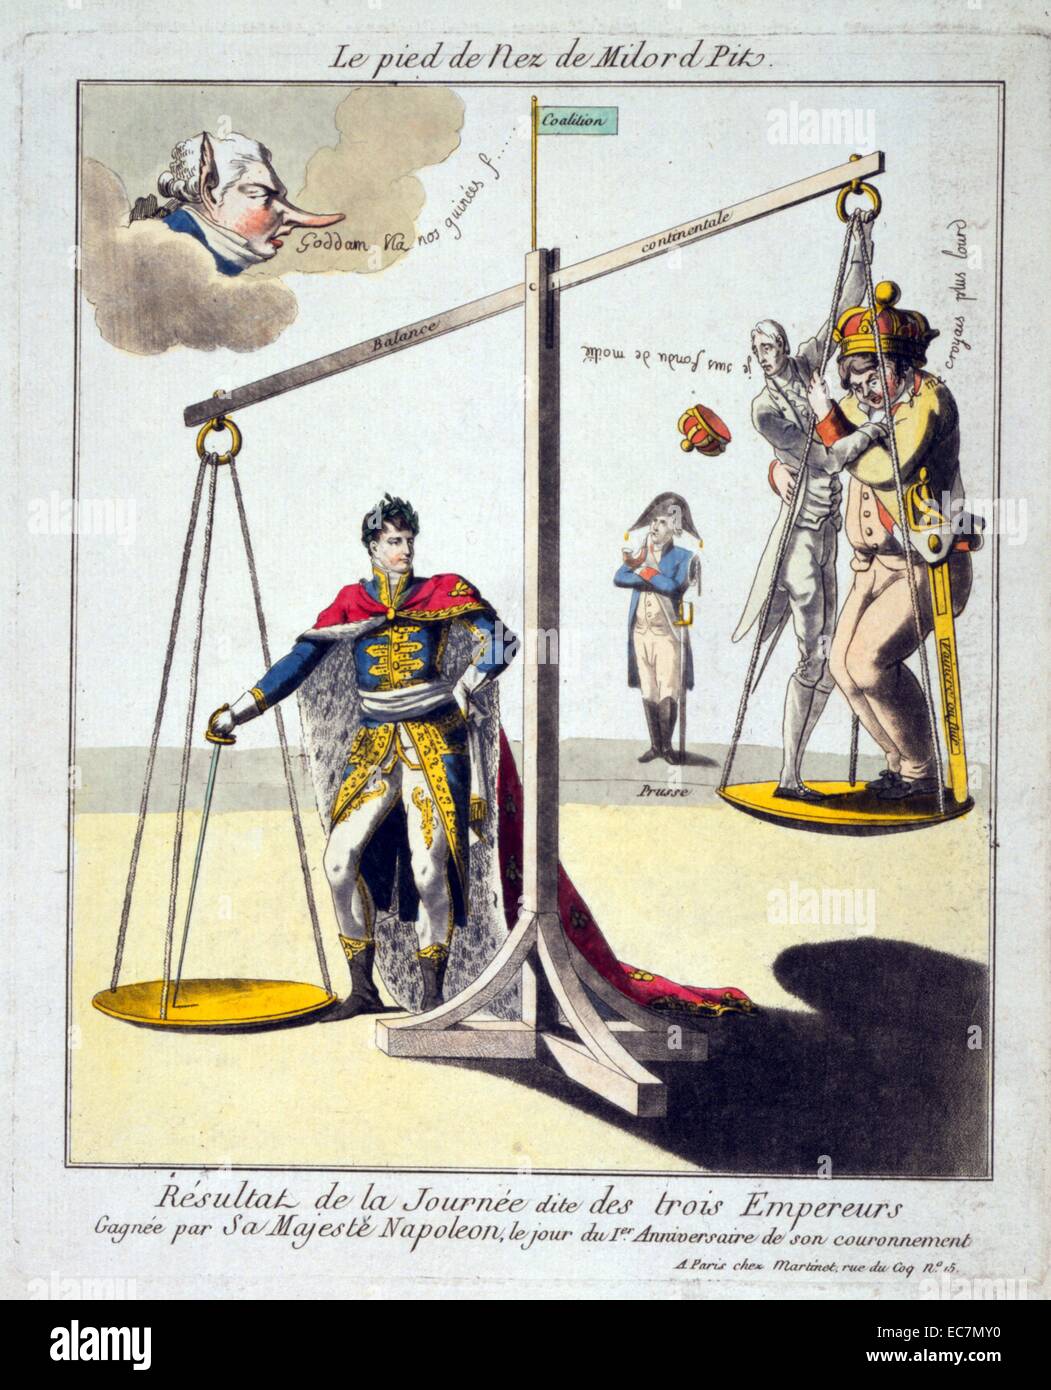 Le pied de nez de Milord fosse. Caricature montre Napoléon I, le port de  couronne de laurier et l'hermine, robe, la poussant vers le bas d'un côté  d'une échelle avec son épée,